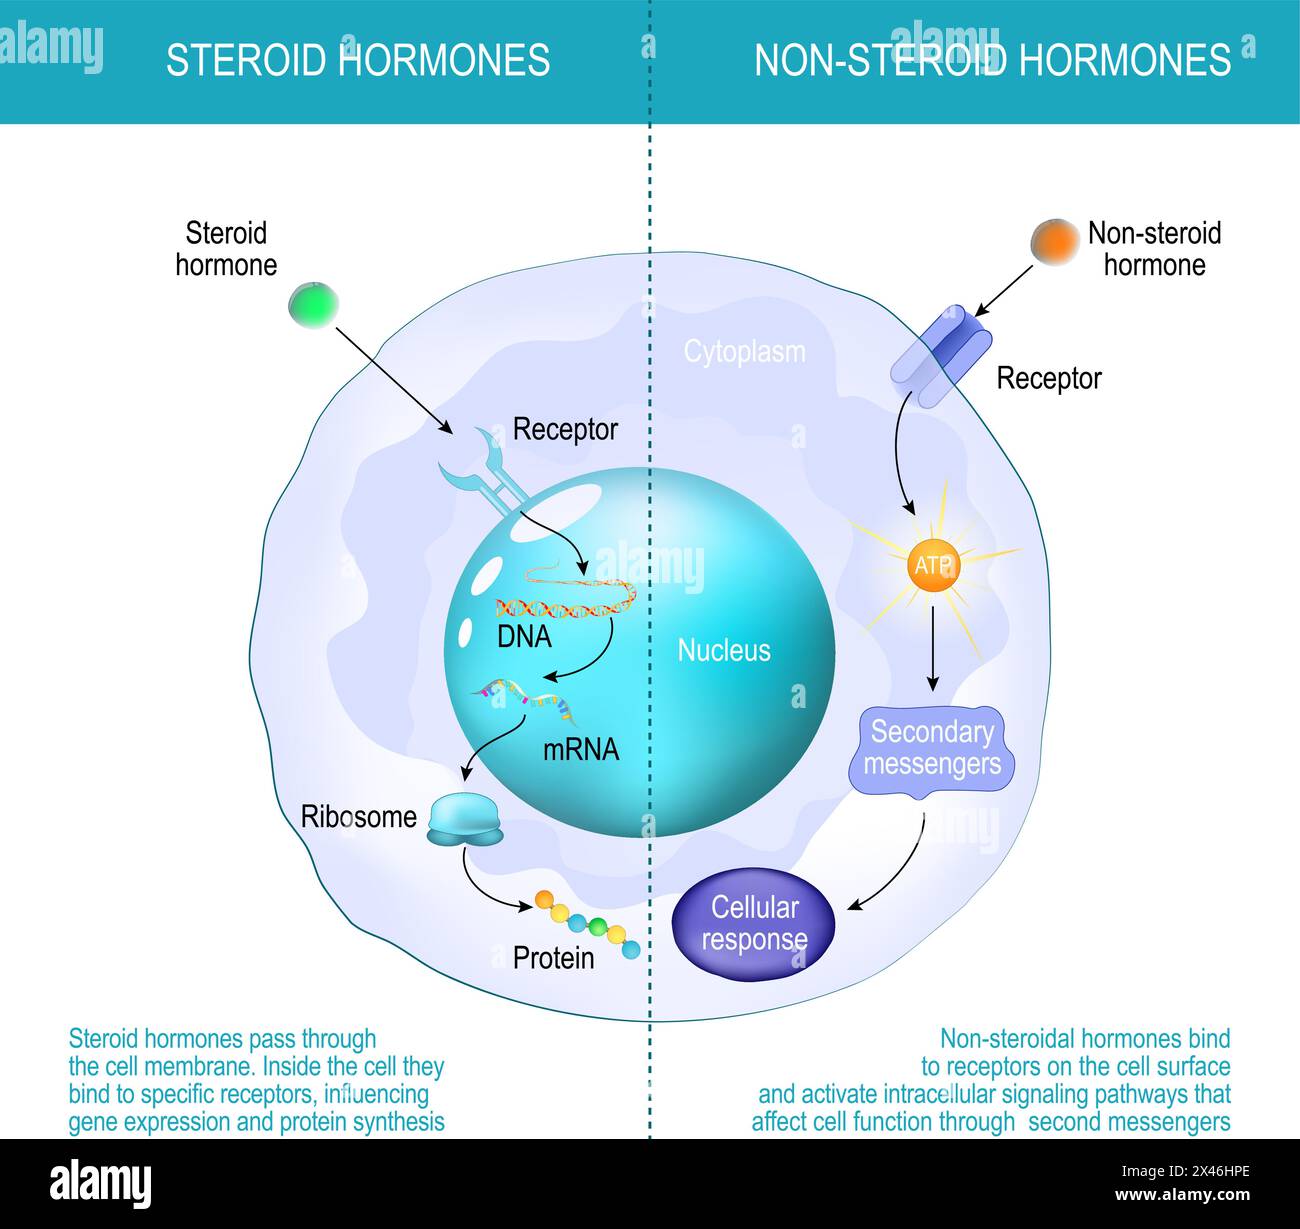 Unterschiede zwischen nicht-Steroidhormonen und Steroidhormonen. Steroidhormone passieren die Zellmembran. Innerhalb der Zelle binden sie an ein bestimmtes r Stock Vektor